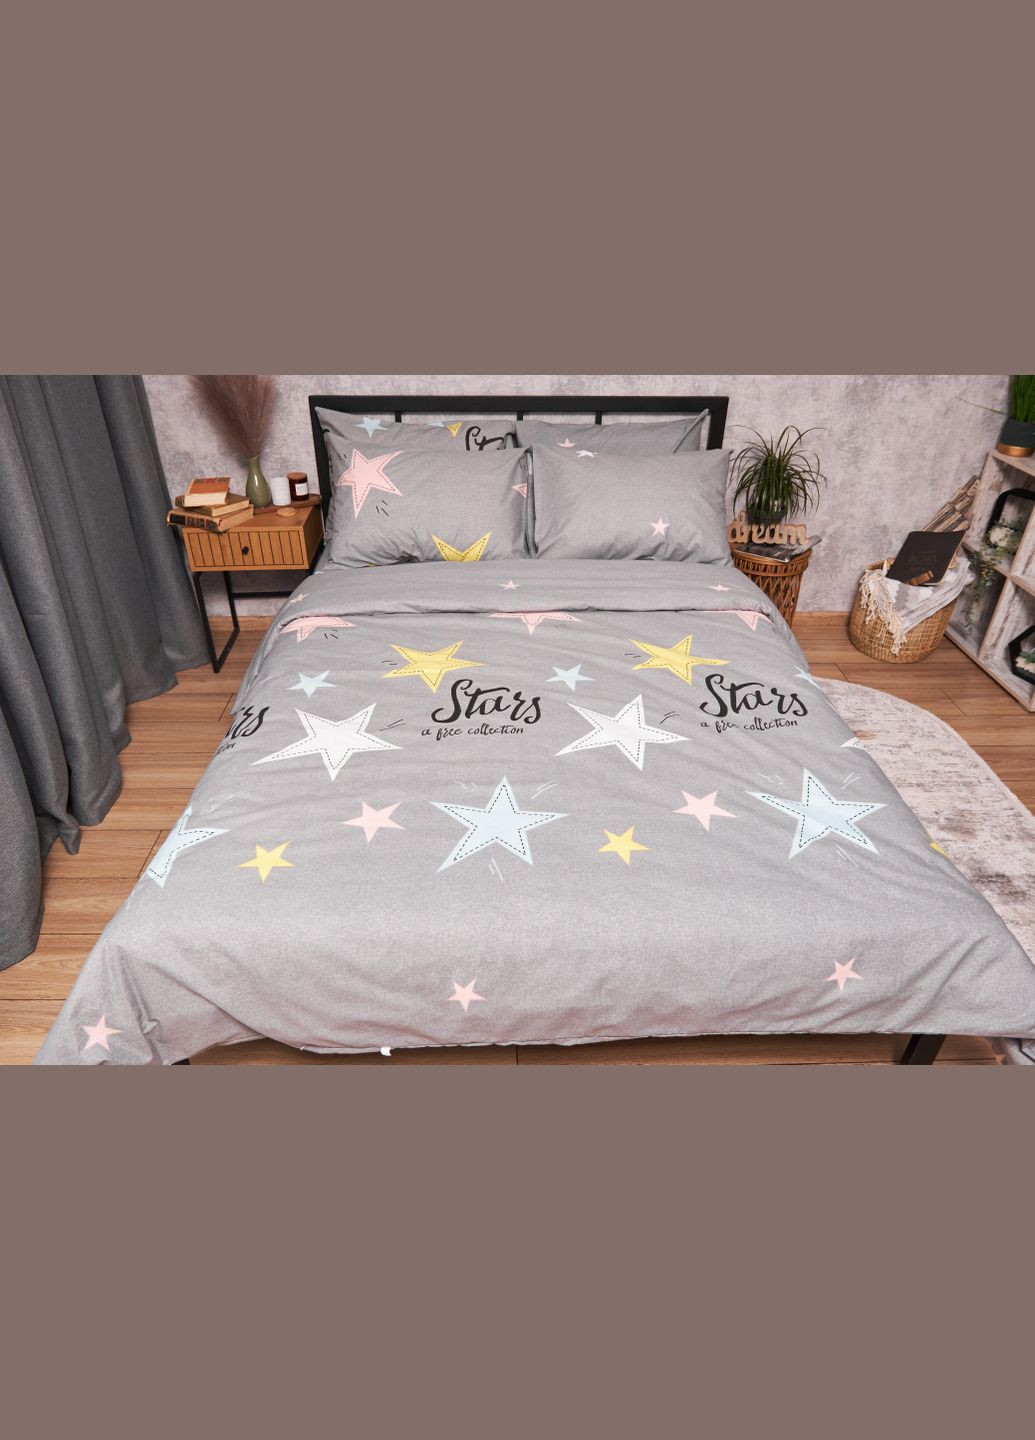 Комплект постельного белья Бязь Gold Люкс «Gray Stars» Детский 110х140 наволочки 2х50х50 (MS-830000102) Moon&Star graystars (293173185)